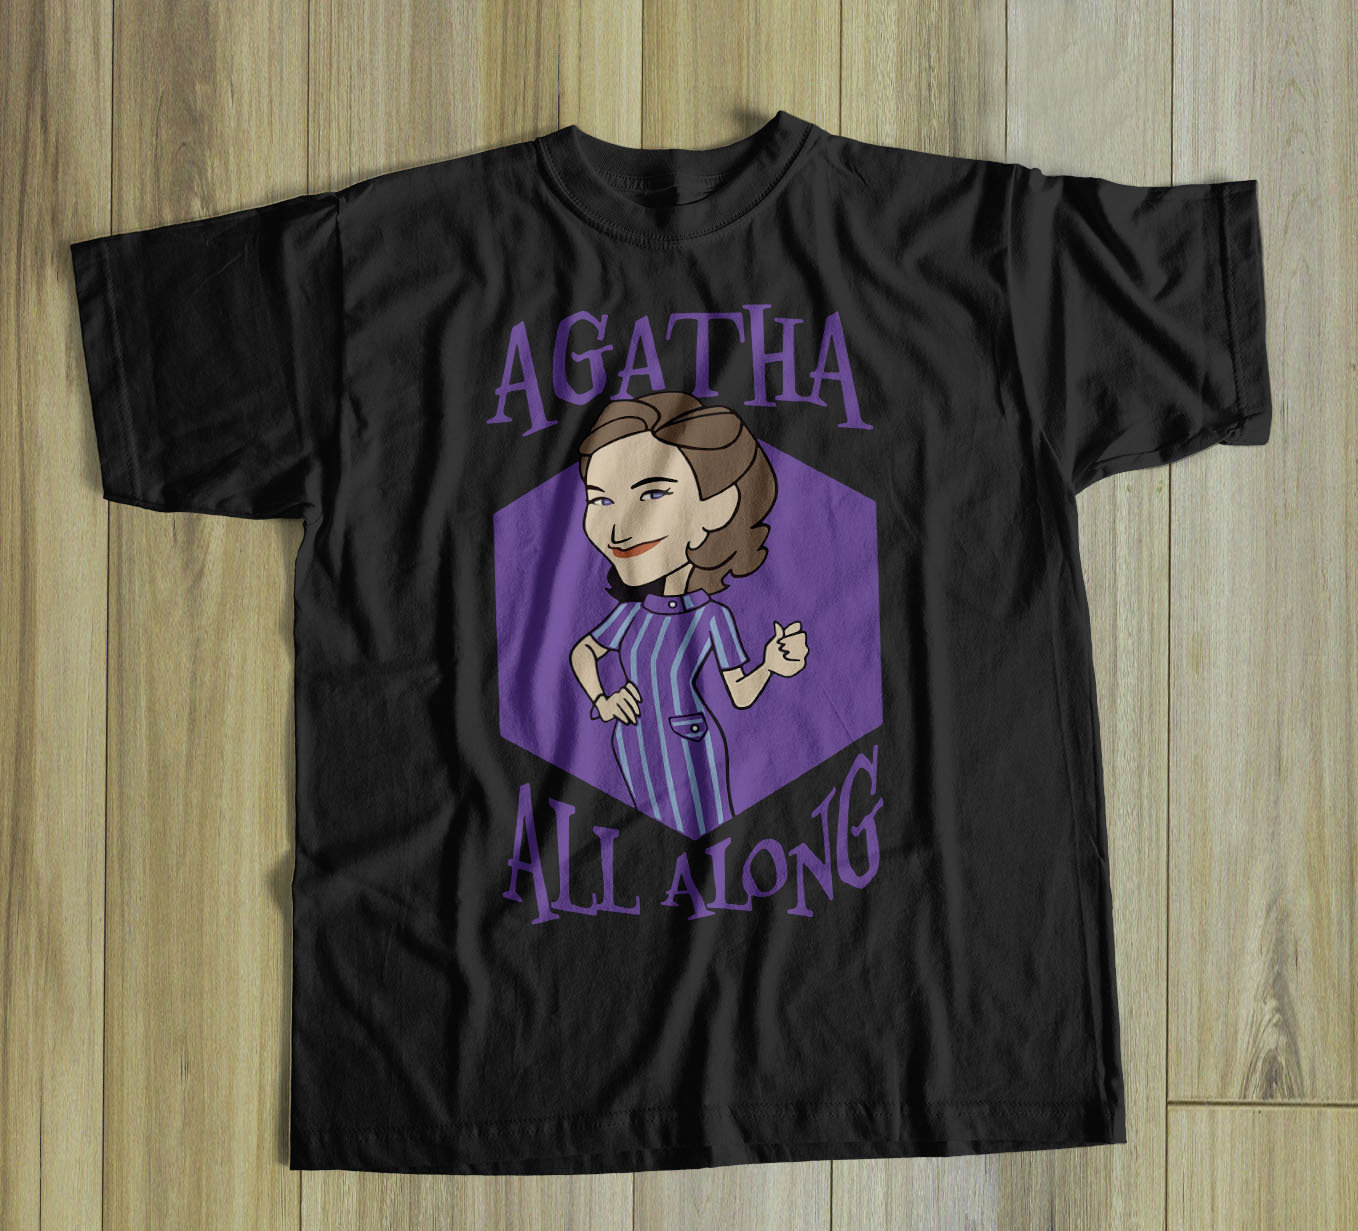 Agatha-harkness-shirt-agatha-all-along-wandavision-shirt-scarlet-witch-shirt-vision-shirt-avengers-shirt-wandavision-t-shirt-witch-vbbdi